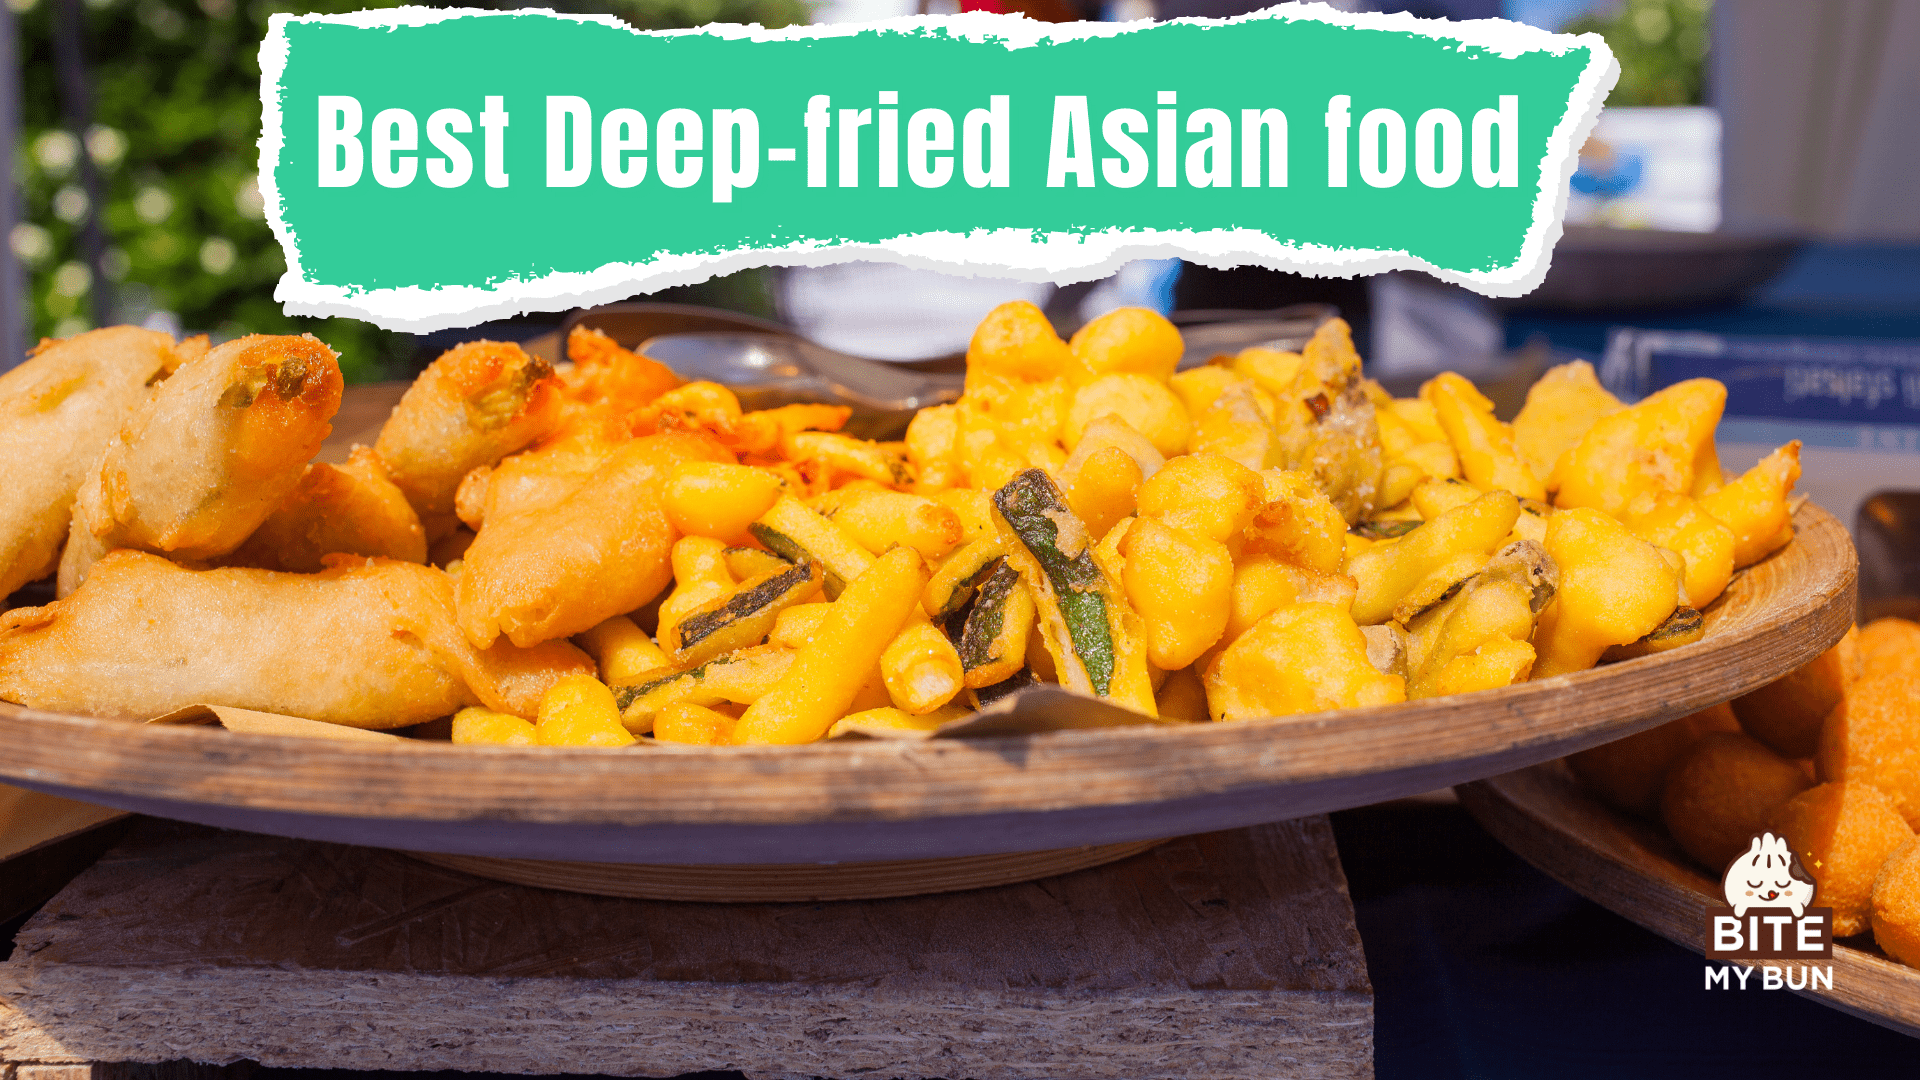 Comida asiática frita | O segredo do que o torna tão bom